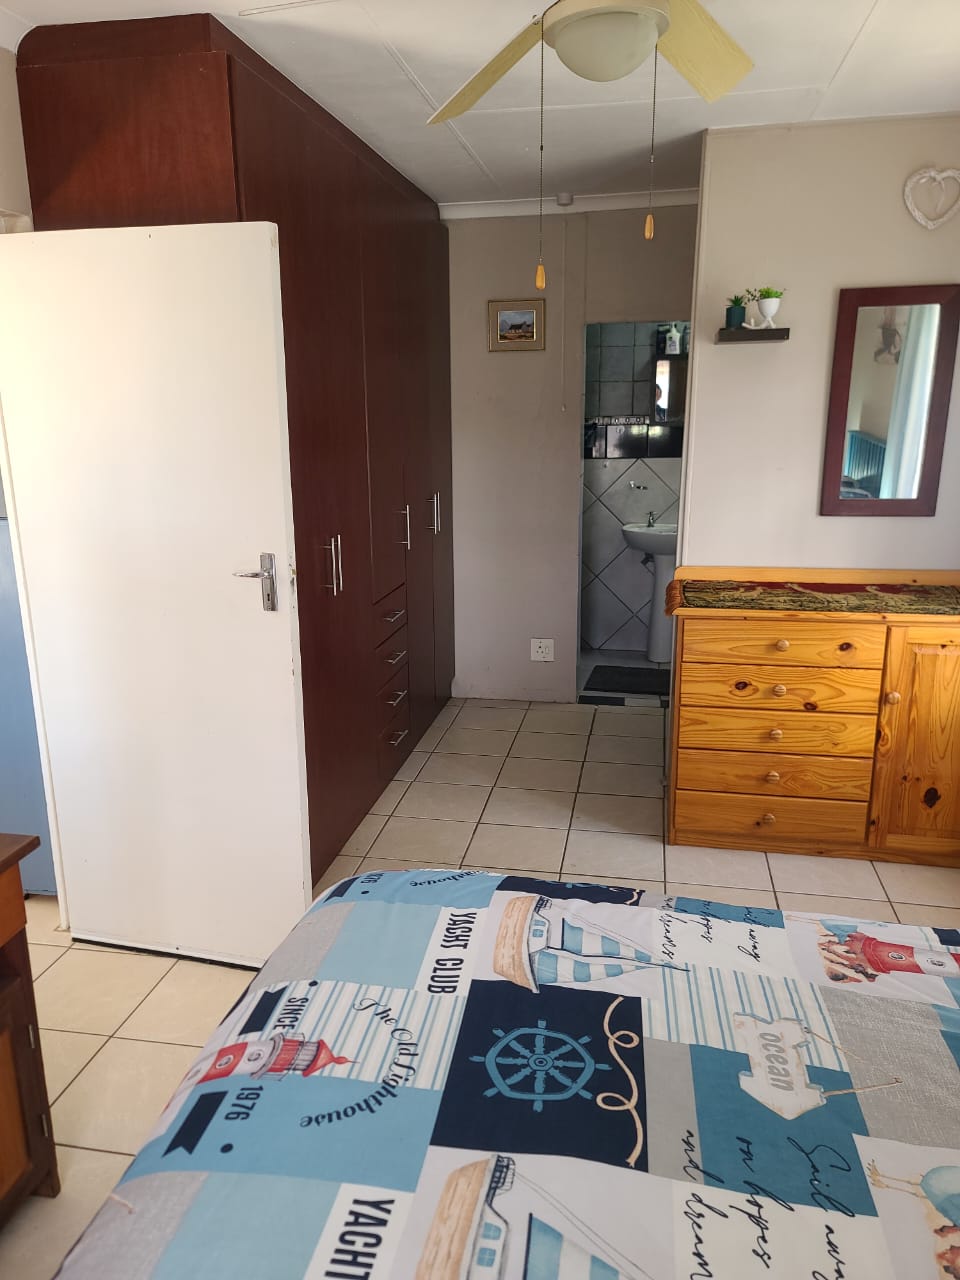 3 Bedroom Property for Sale in Vakansieplaas Western Cape